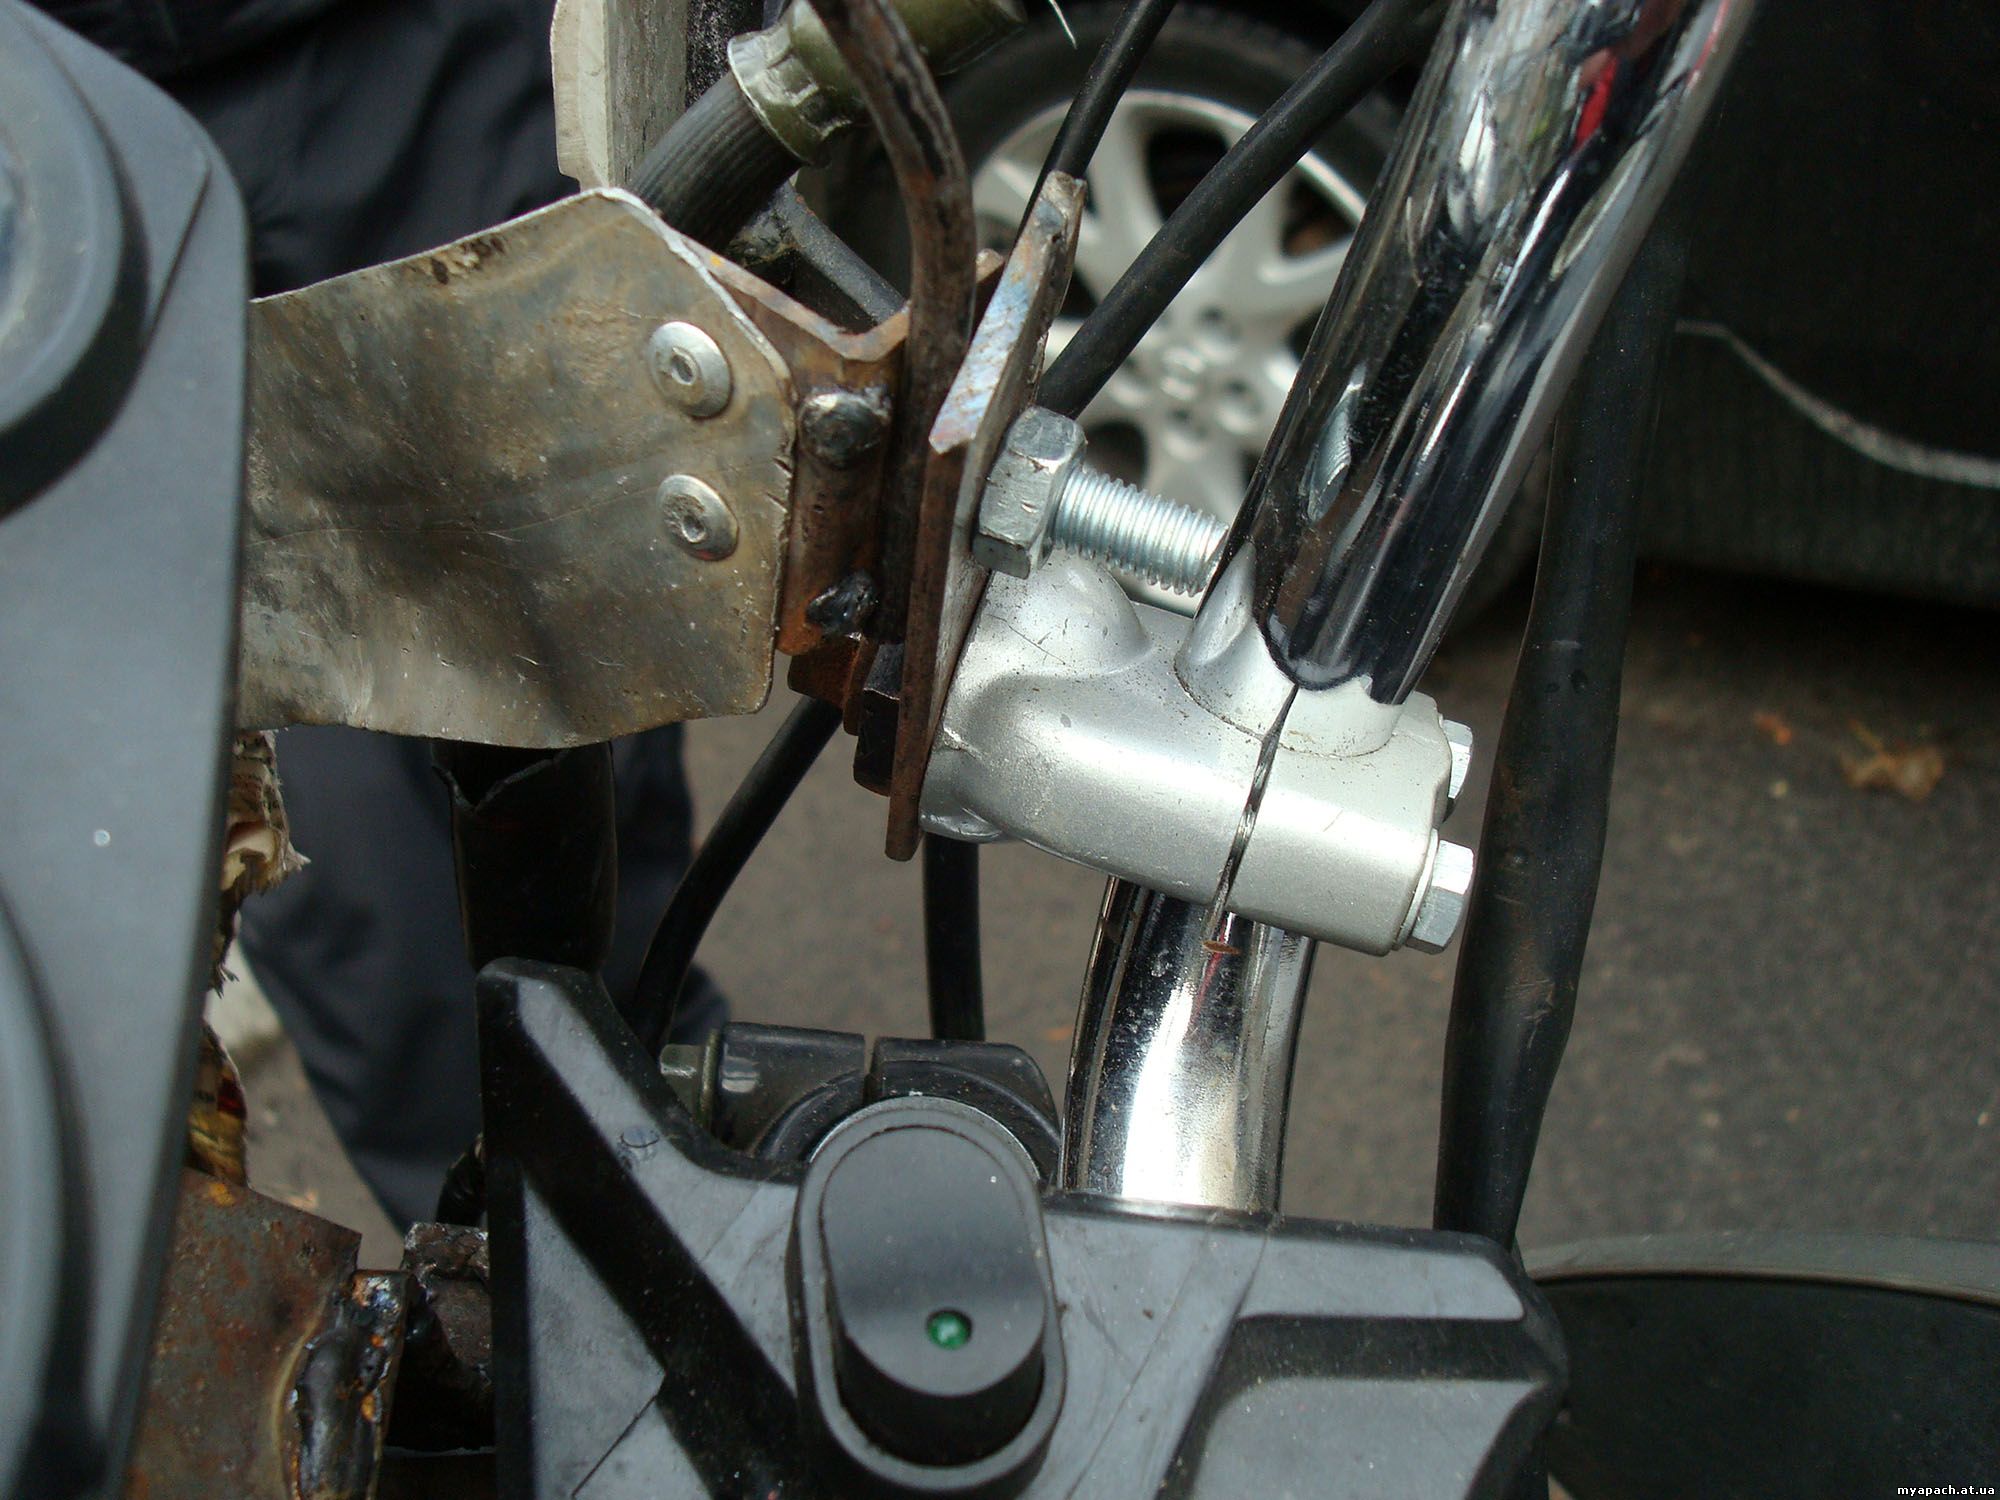 Кріплення захисту рук на 22мм руль мотоцикла Альфамото Апачі